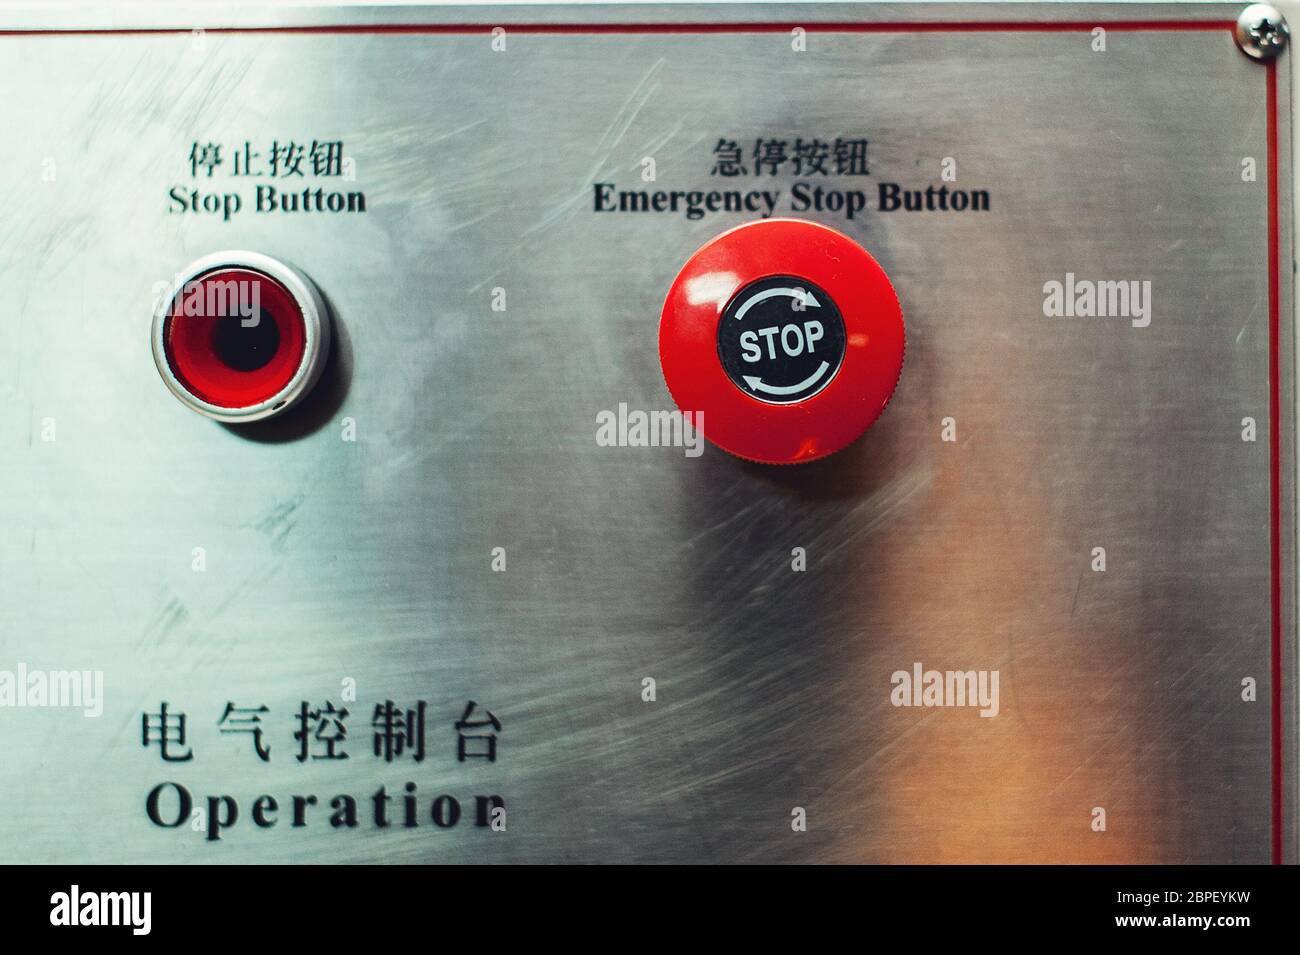 Roter Not-aus-Schalter, Beschriftung in Englisch und Chinesisch  Stockfotografie - Alamy